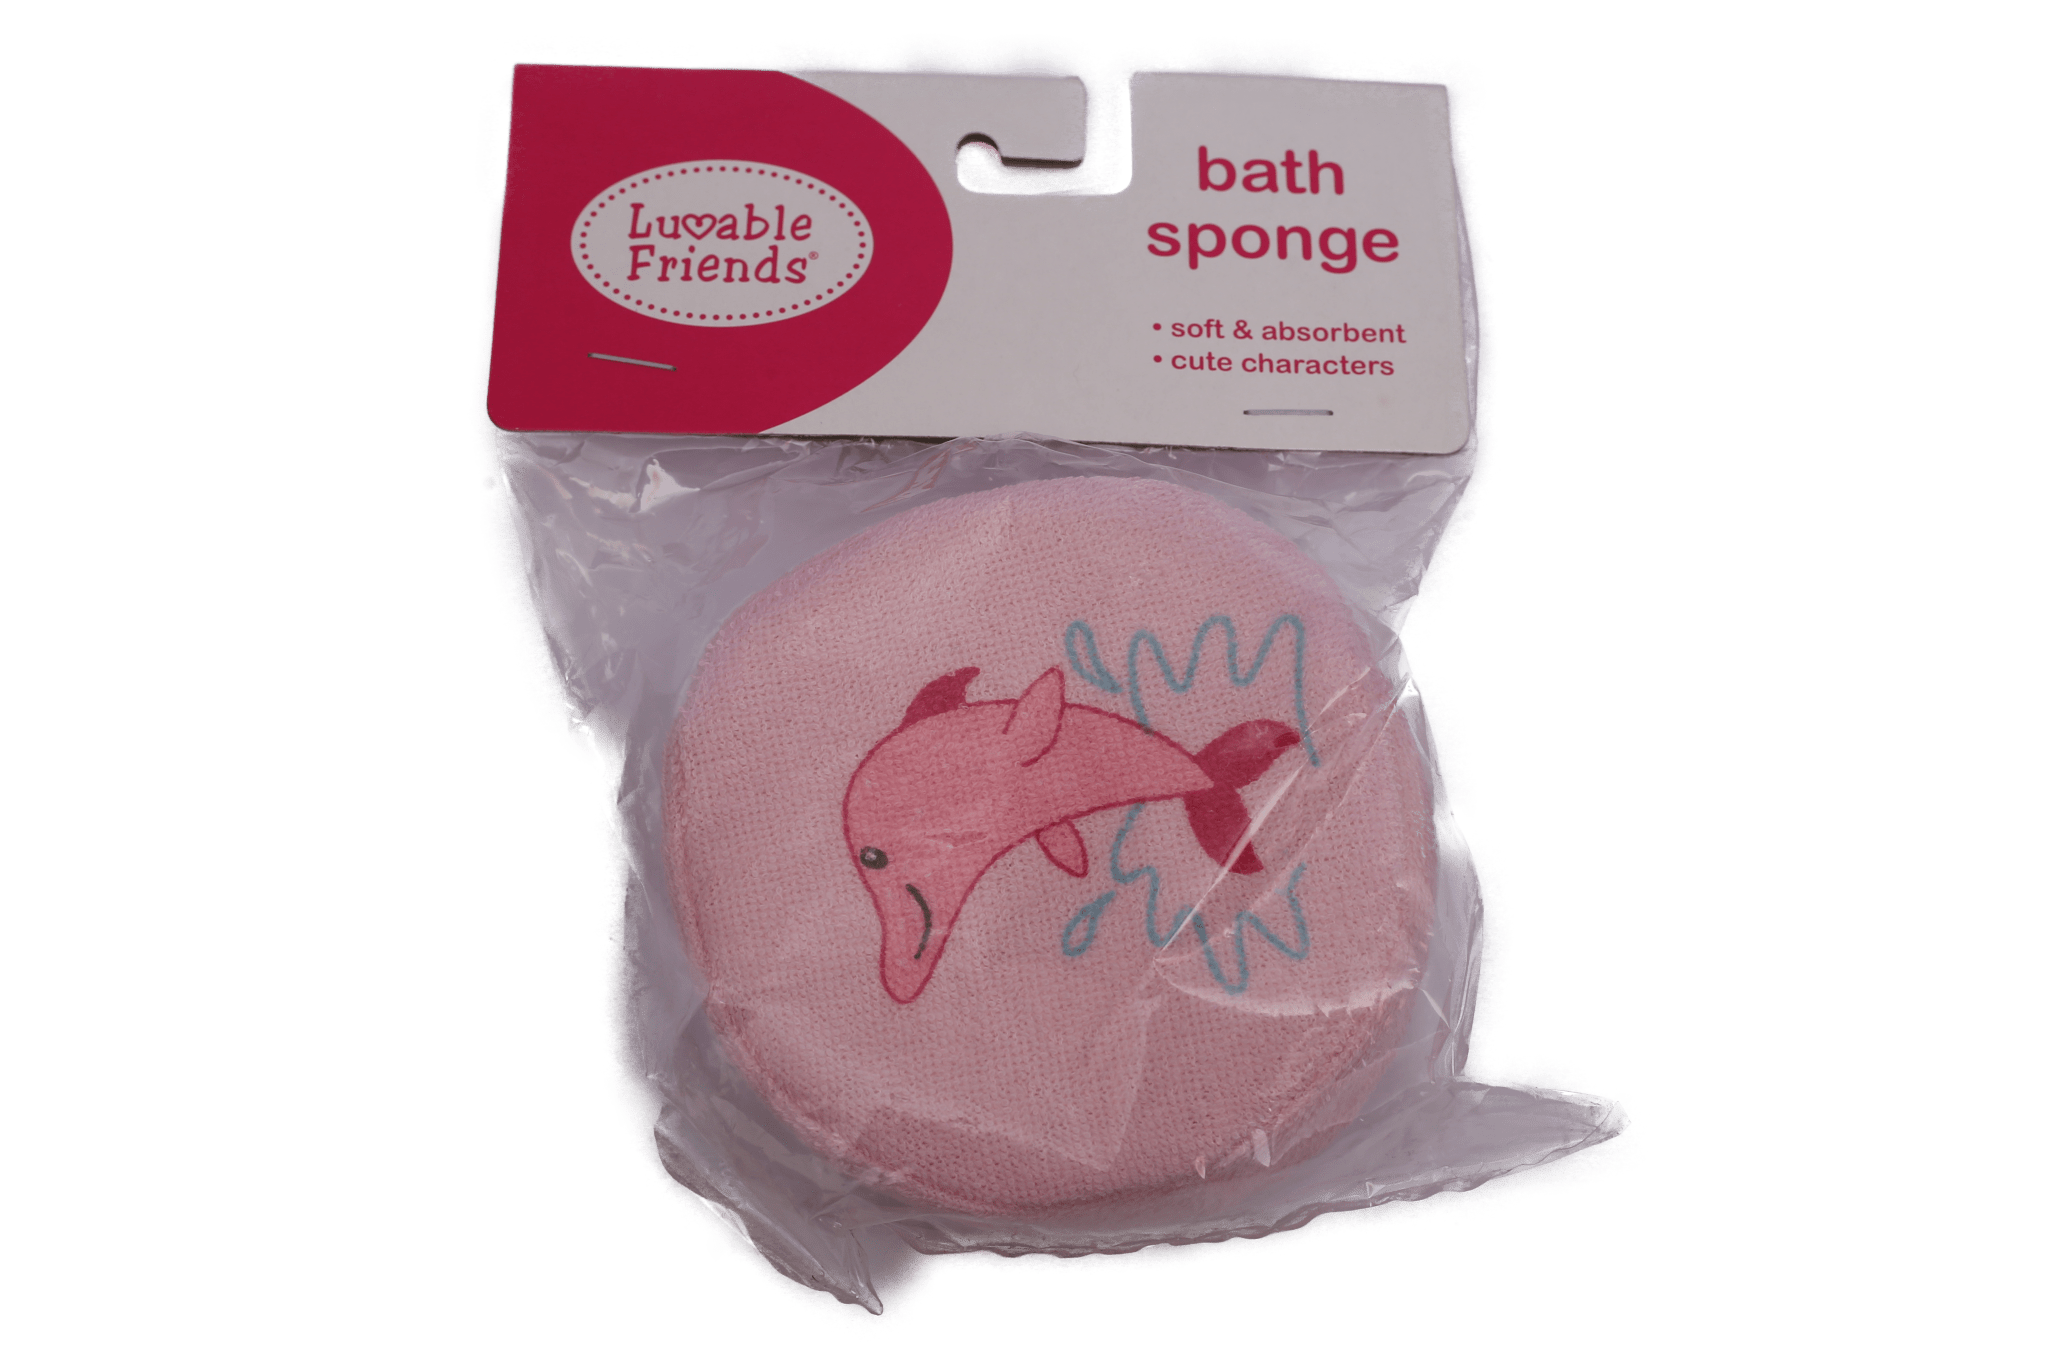 Luvable Friend Bath Sponge